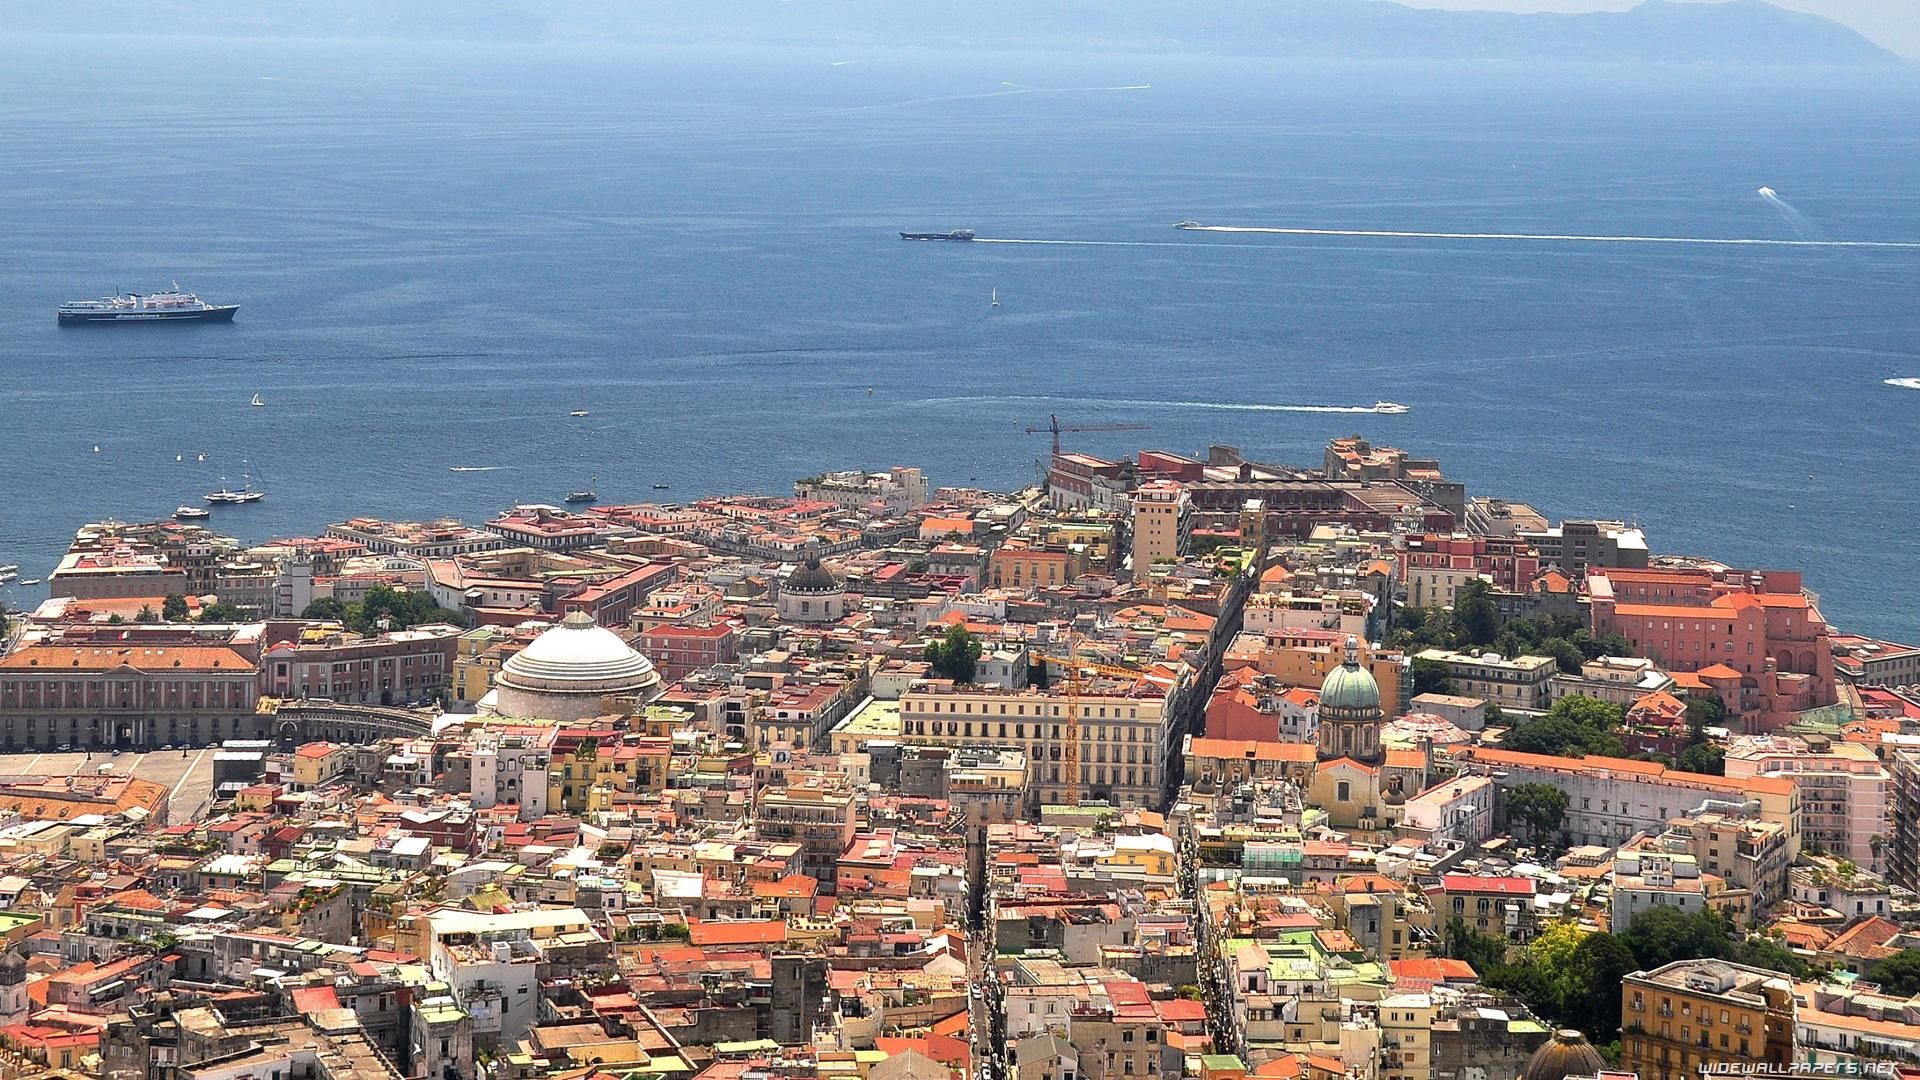 Previsioni meteo Napoli: stabile e mite, che temperature si avranno ... -   Napoli